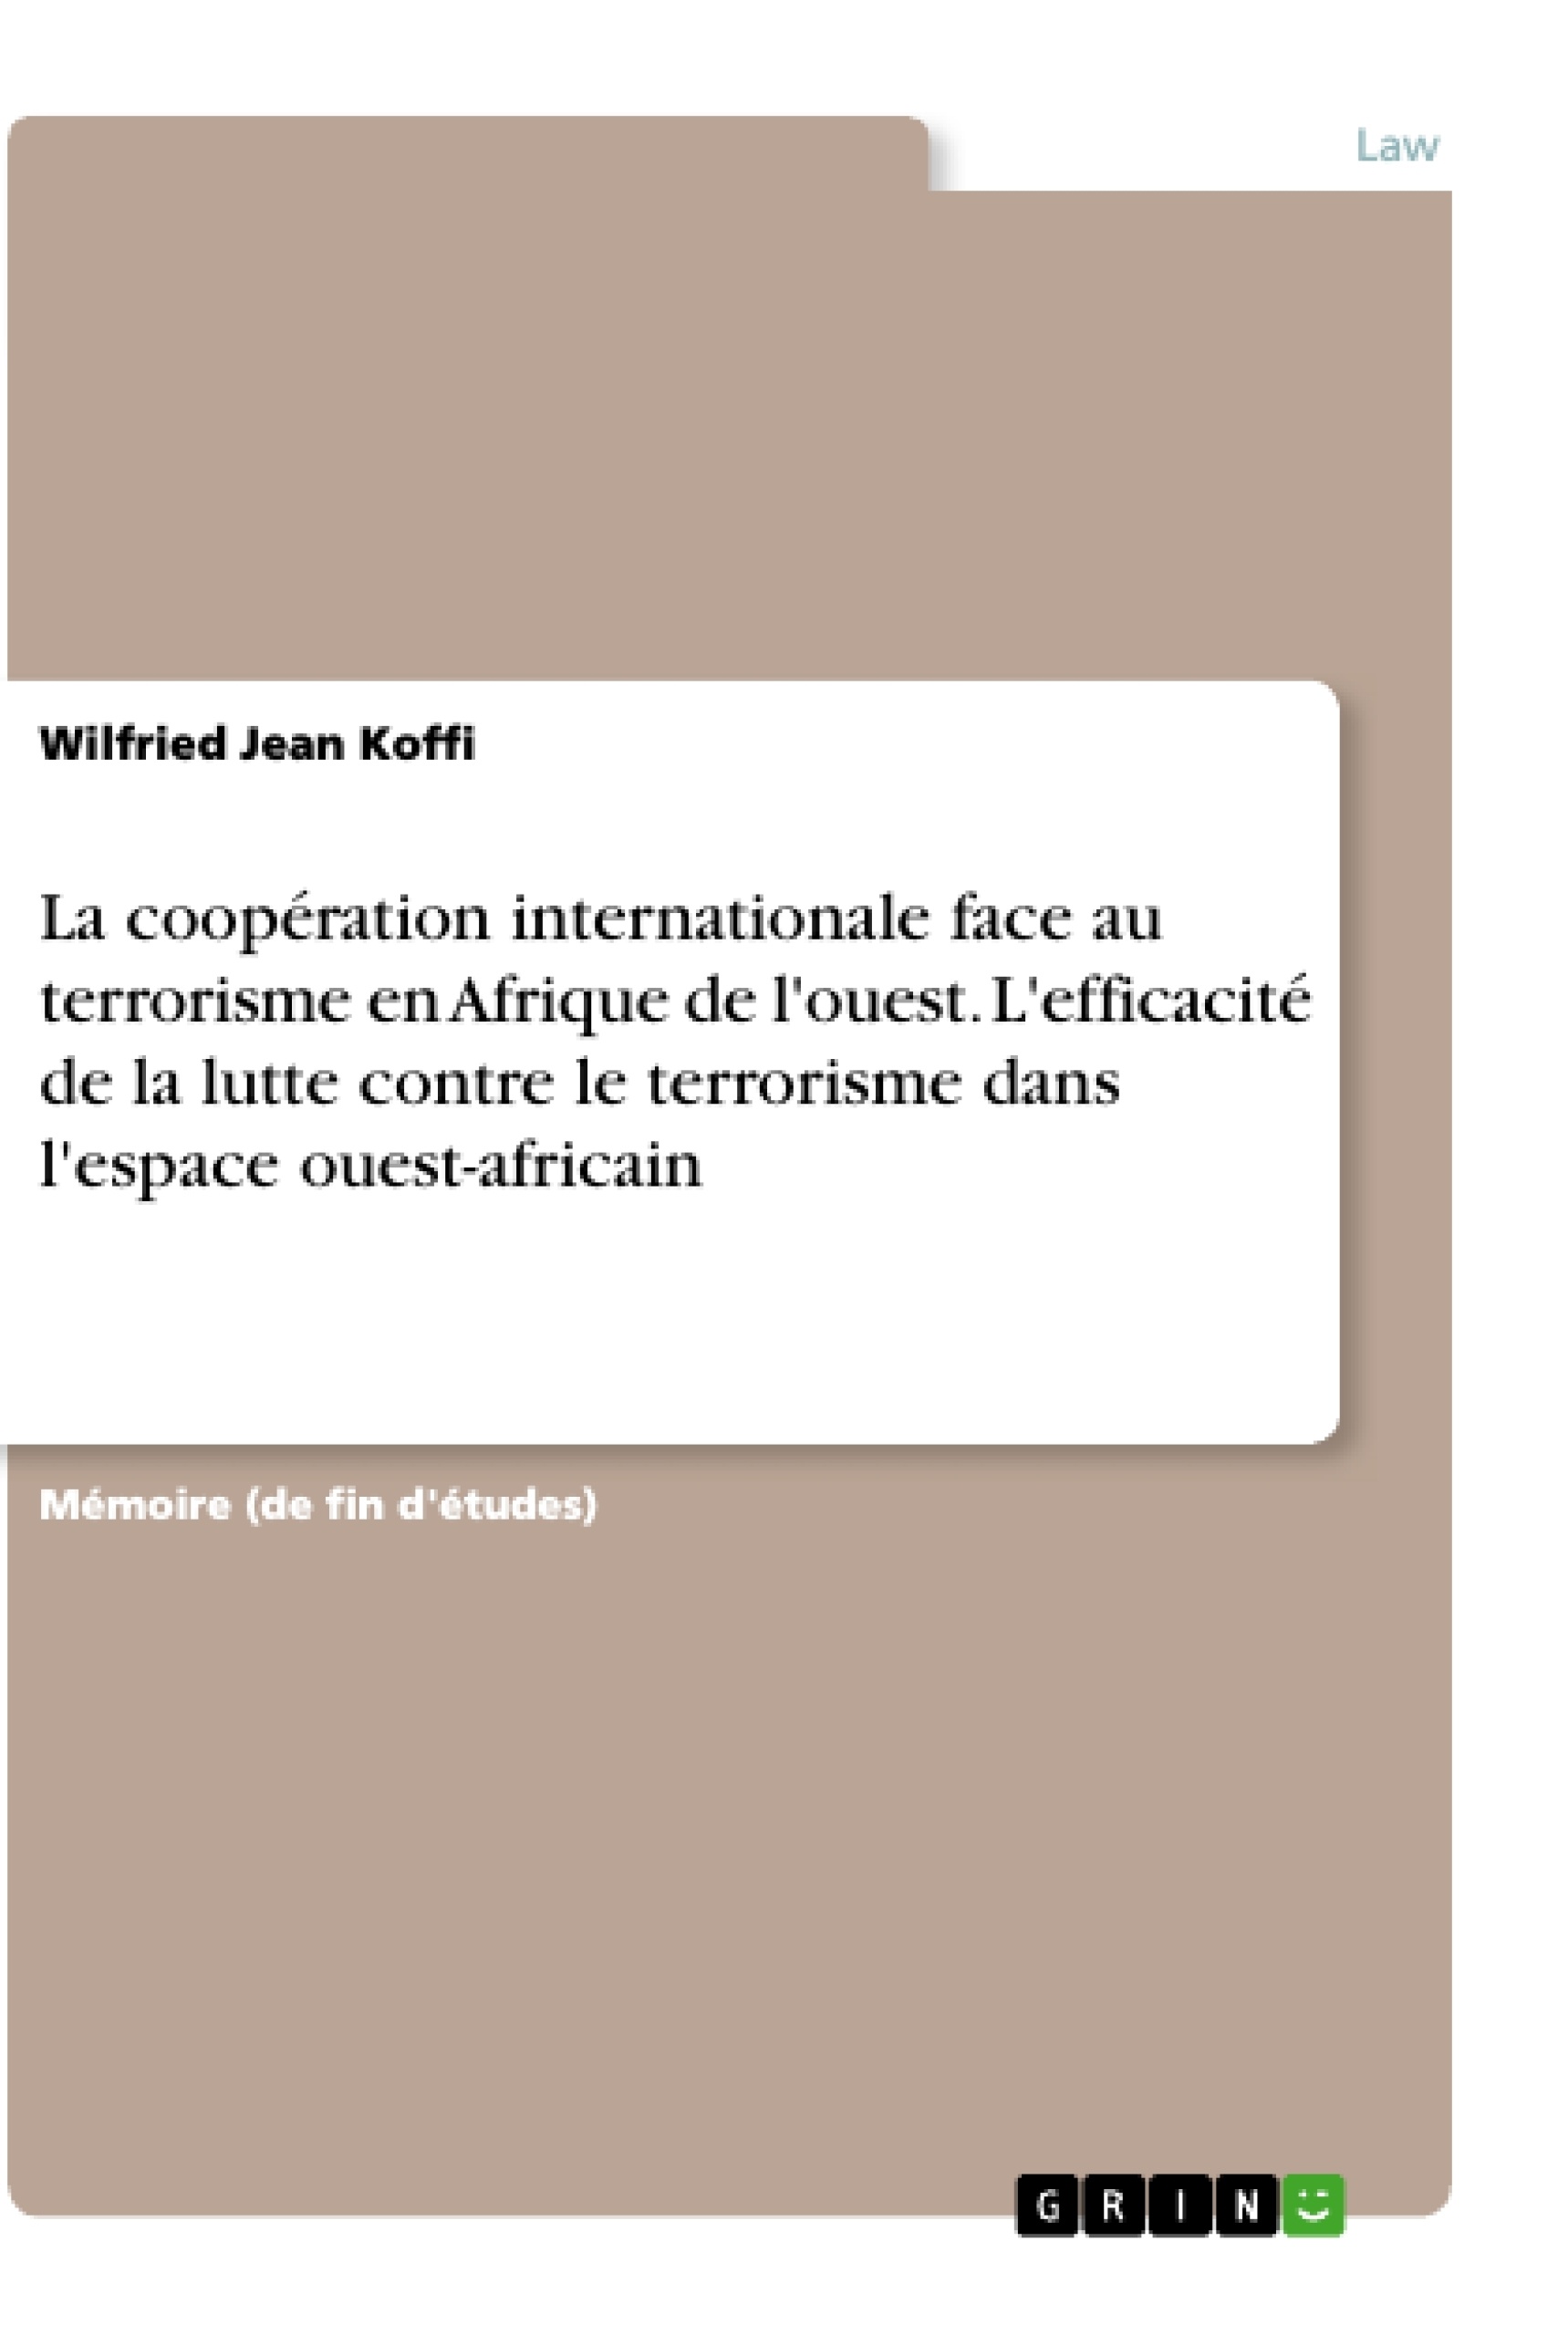 Titre: La coopération internationale face au terrorisme en Afrique de l'ouest. L'efficacité de la lutte contre le terrorisme dans l'espace ouest-africain